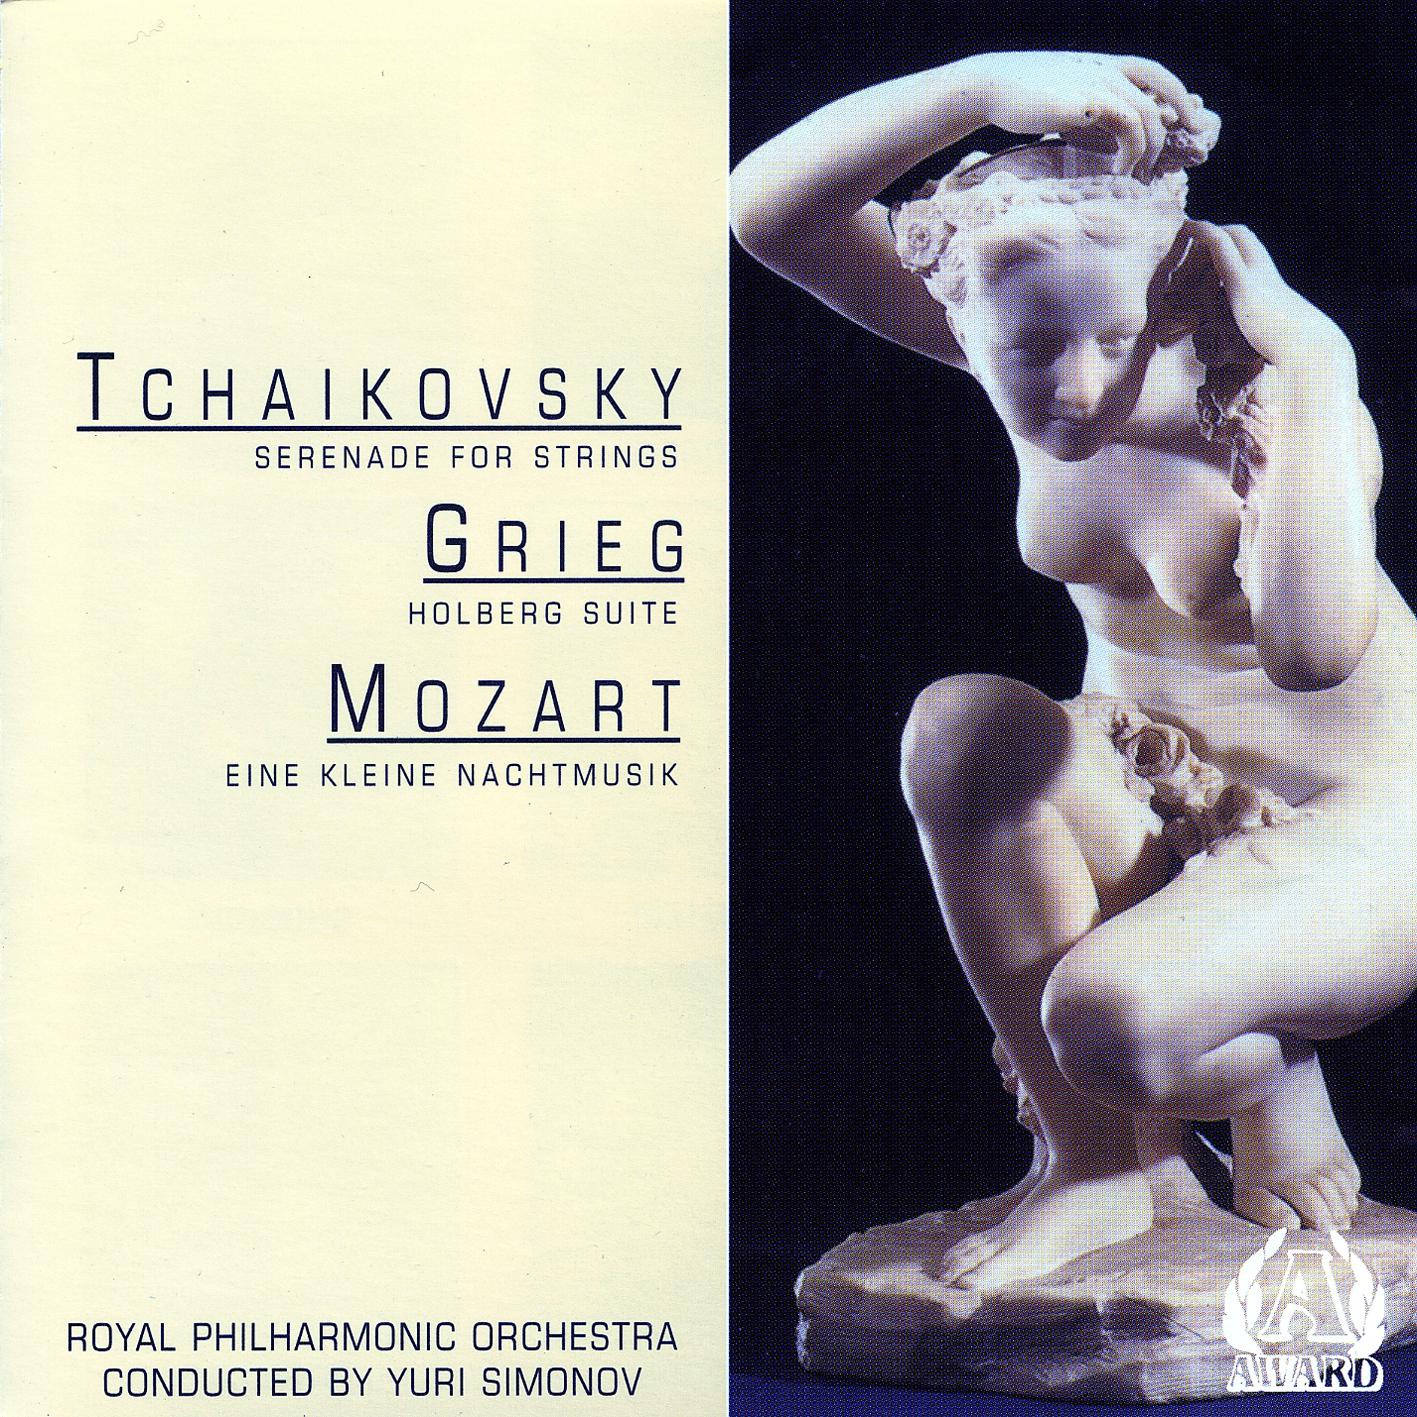 Royal Philharmonic Orchestra - Mozart - Eine Kleine Nachtmusik - Ellegro-allegro